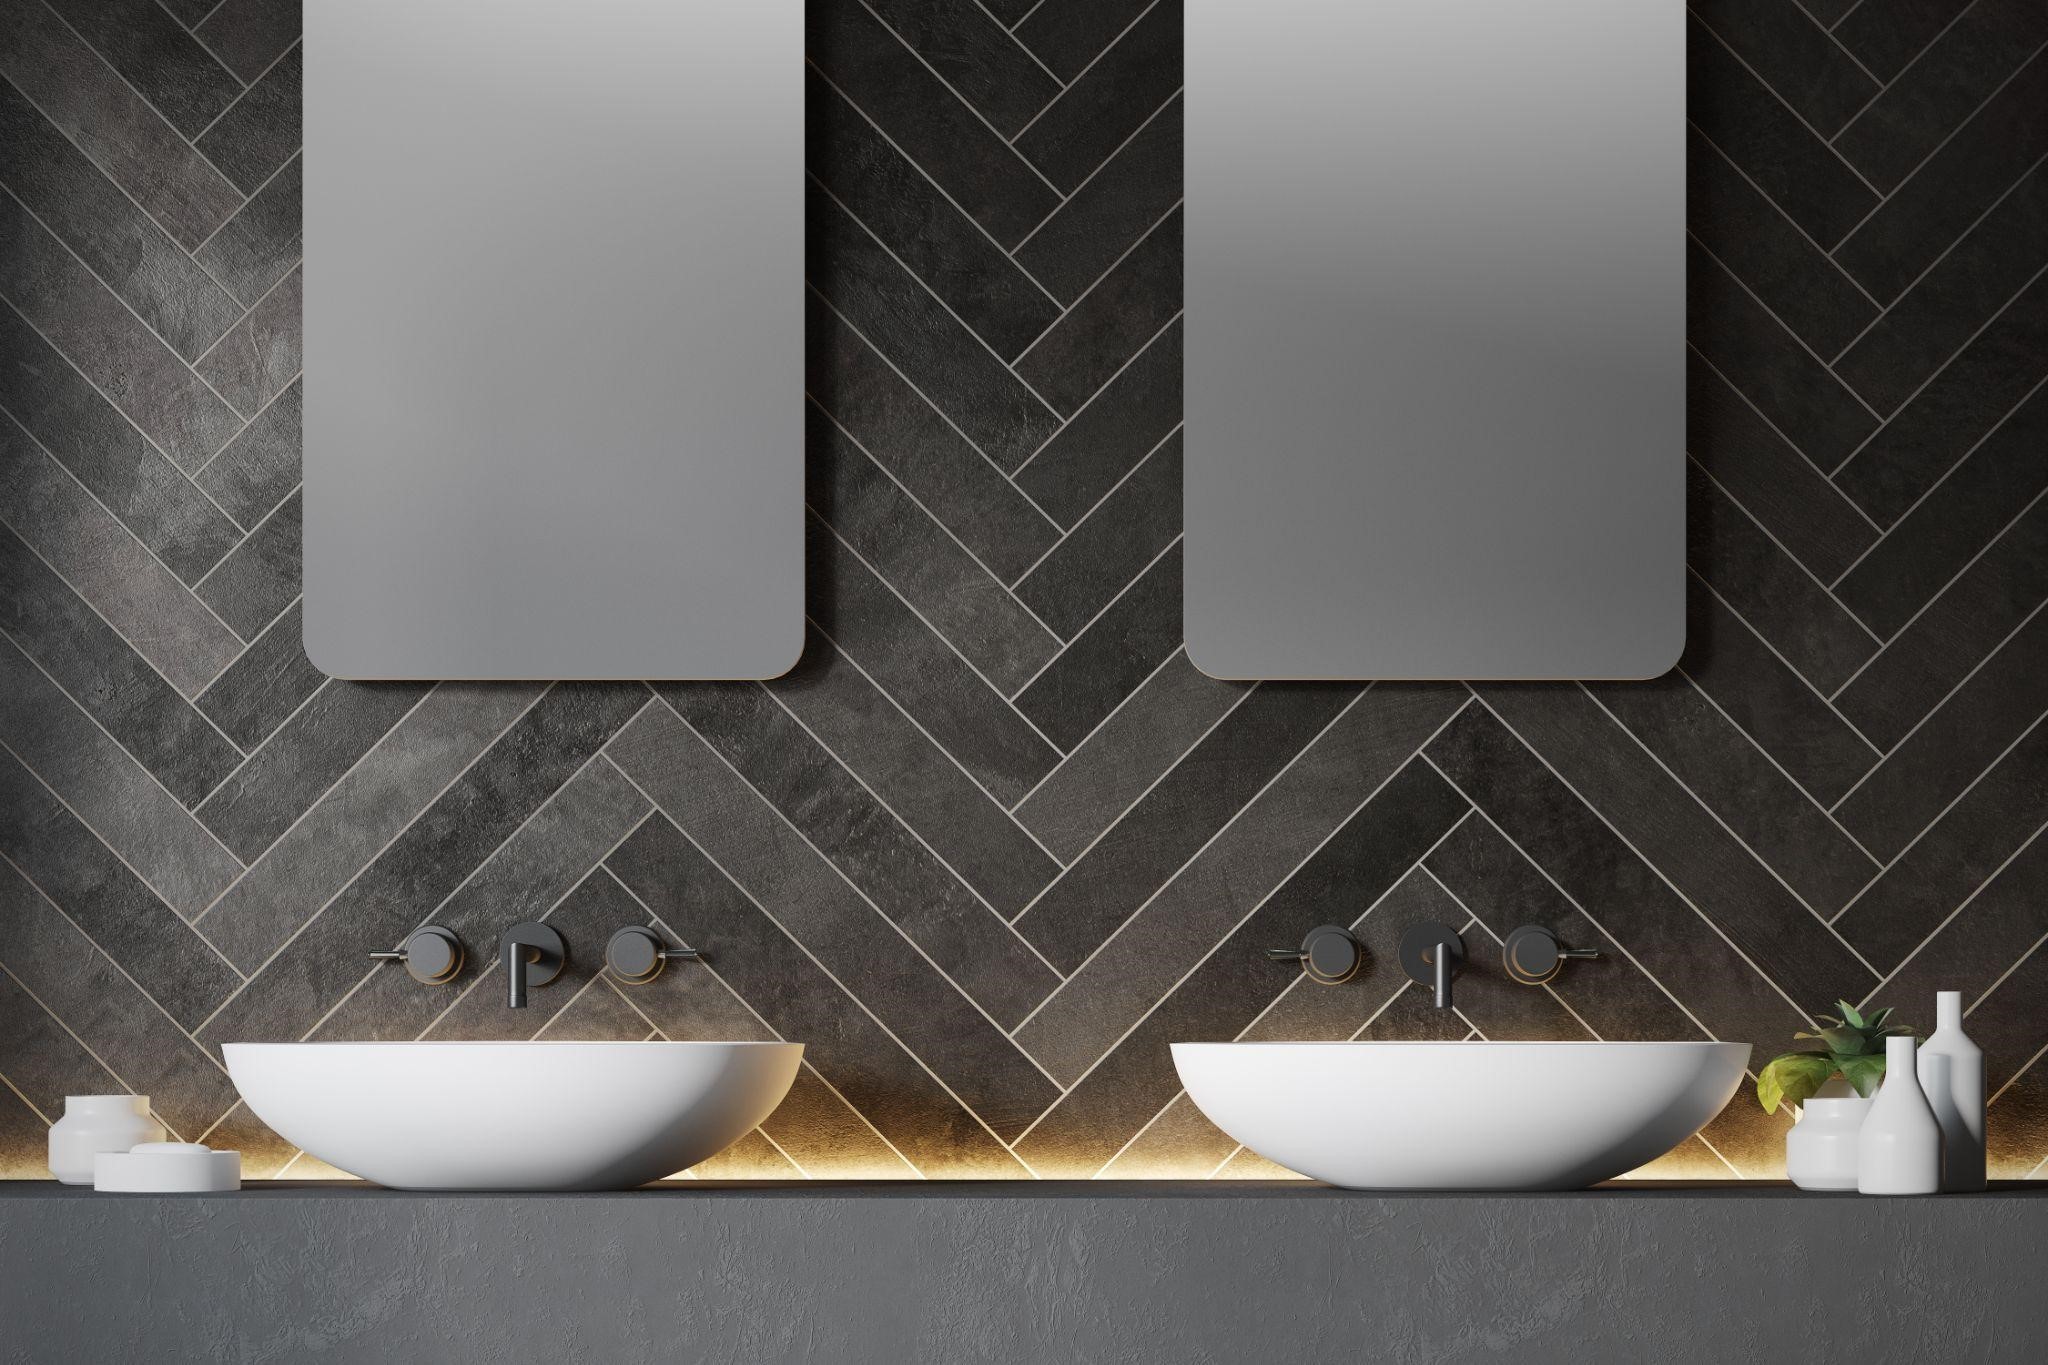 Geometric Patterns - Modern Bathroom Vanity Designs